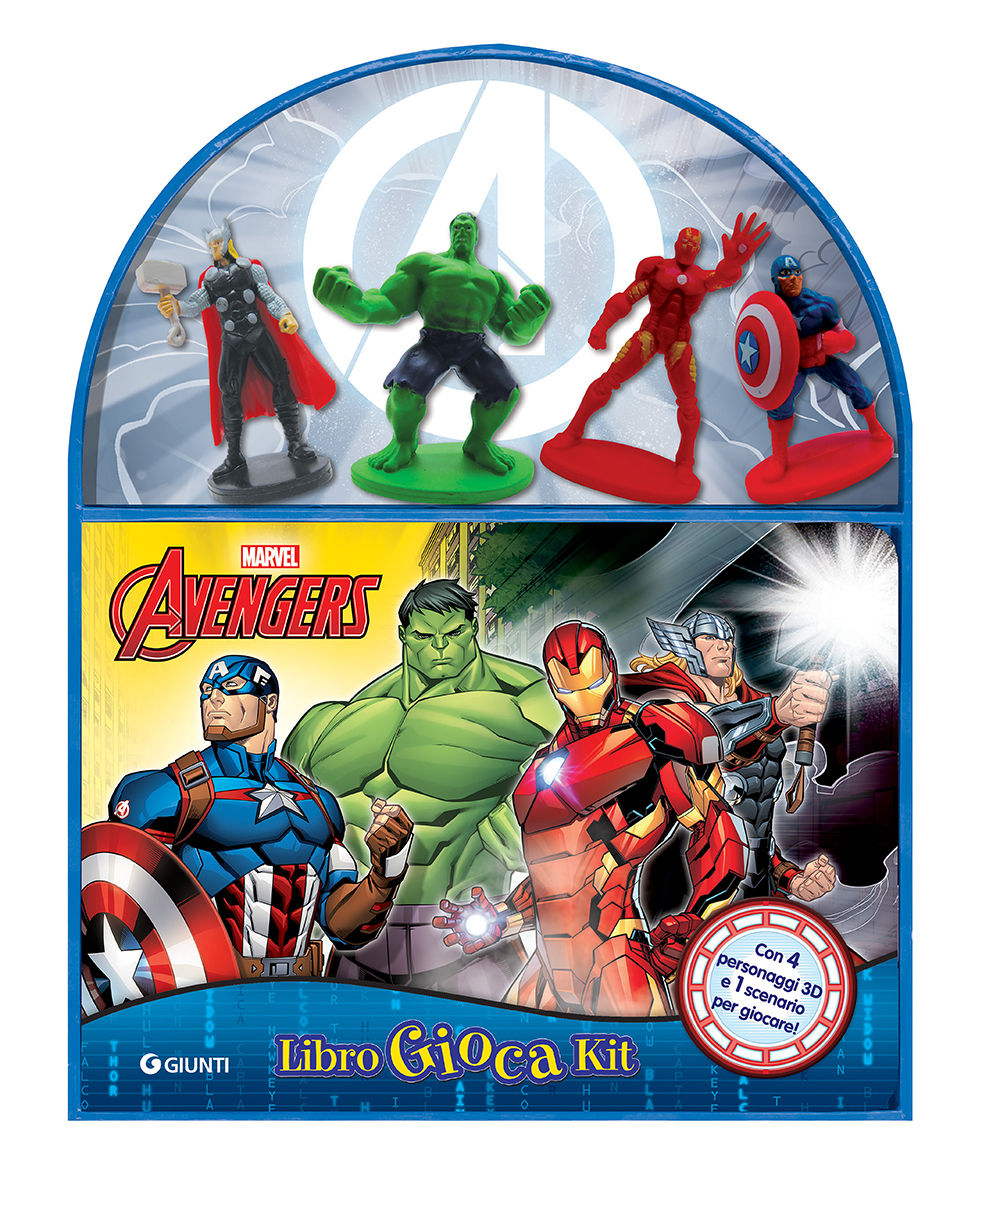 LibroGiocaKit - Avengers::Con 4 personaggi 3D e 1 scenario per giocare!